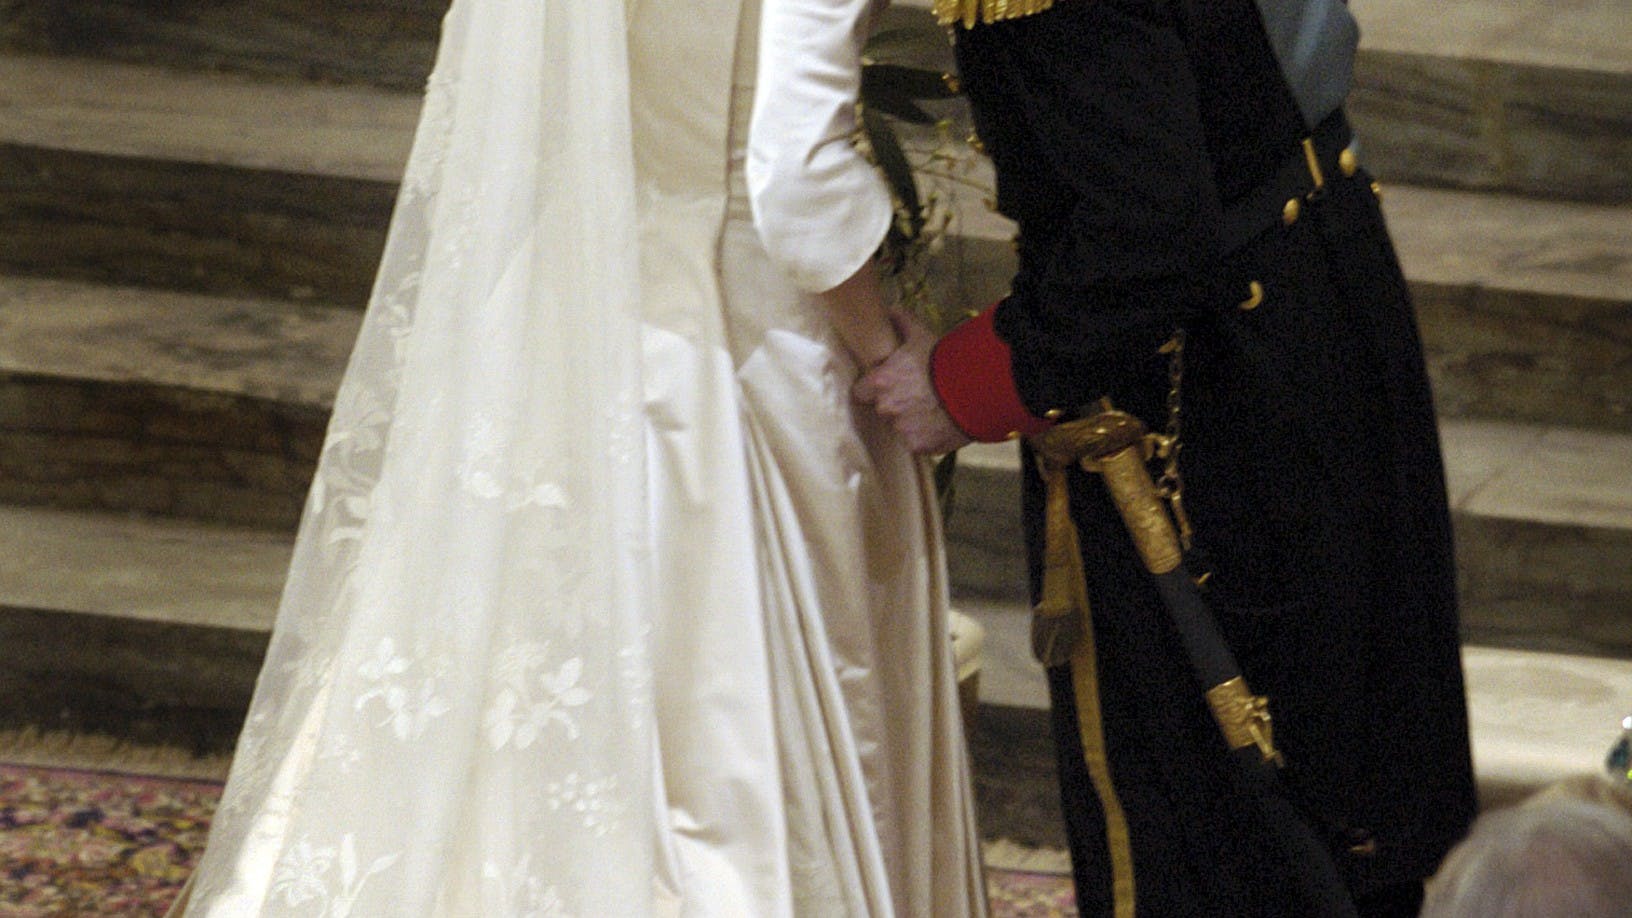 &nbsp;Frederik og Mary gav hinanden deres livs "ja" den 14. maj 2004.
